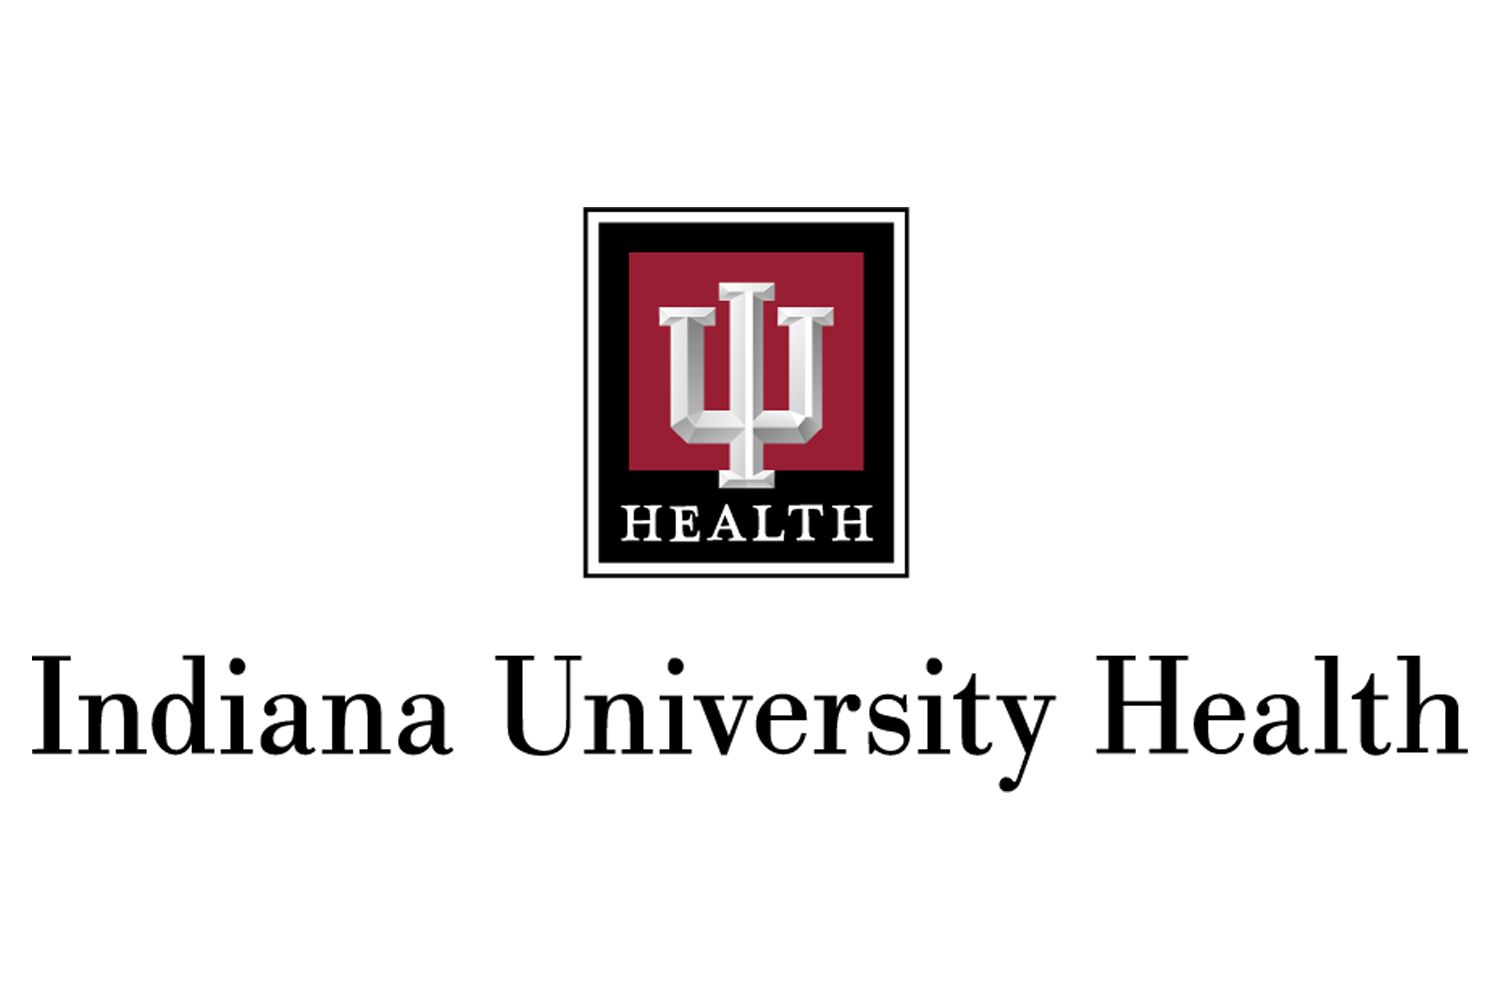 The IU health logo.